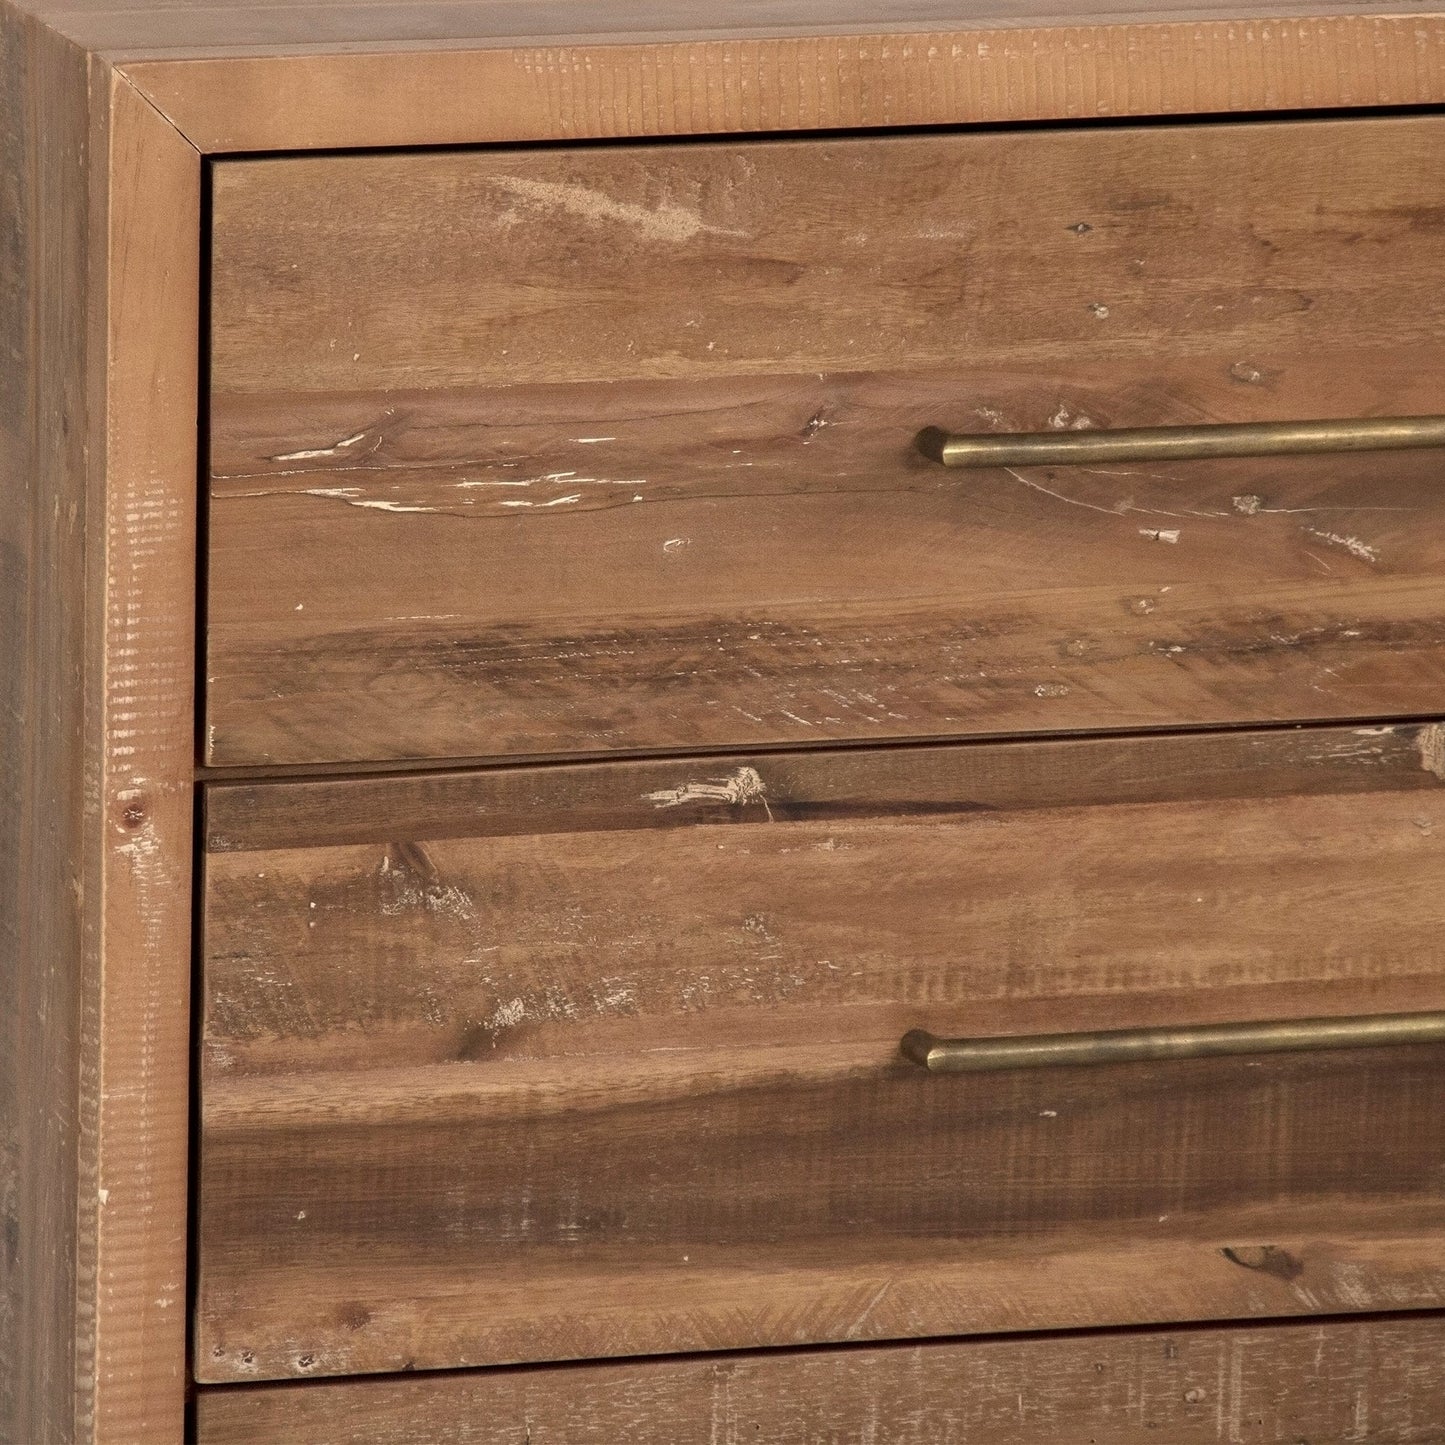 Zentique Austen Dresser - Reclaimed Pine